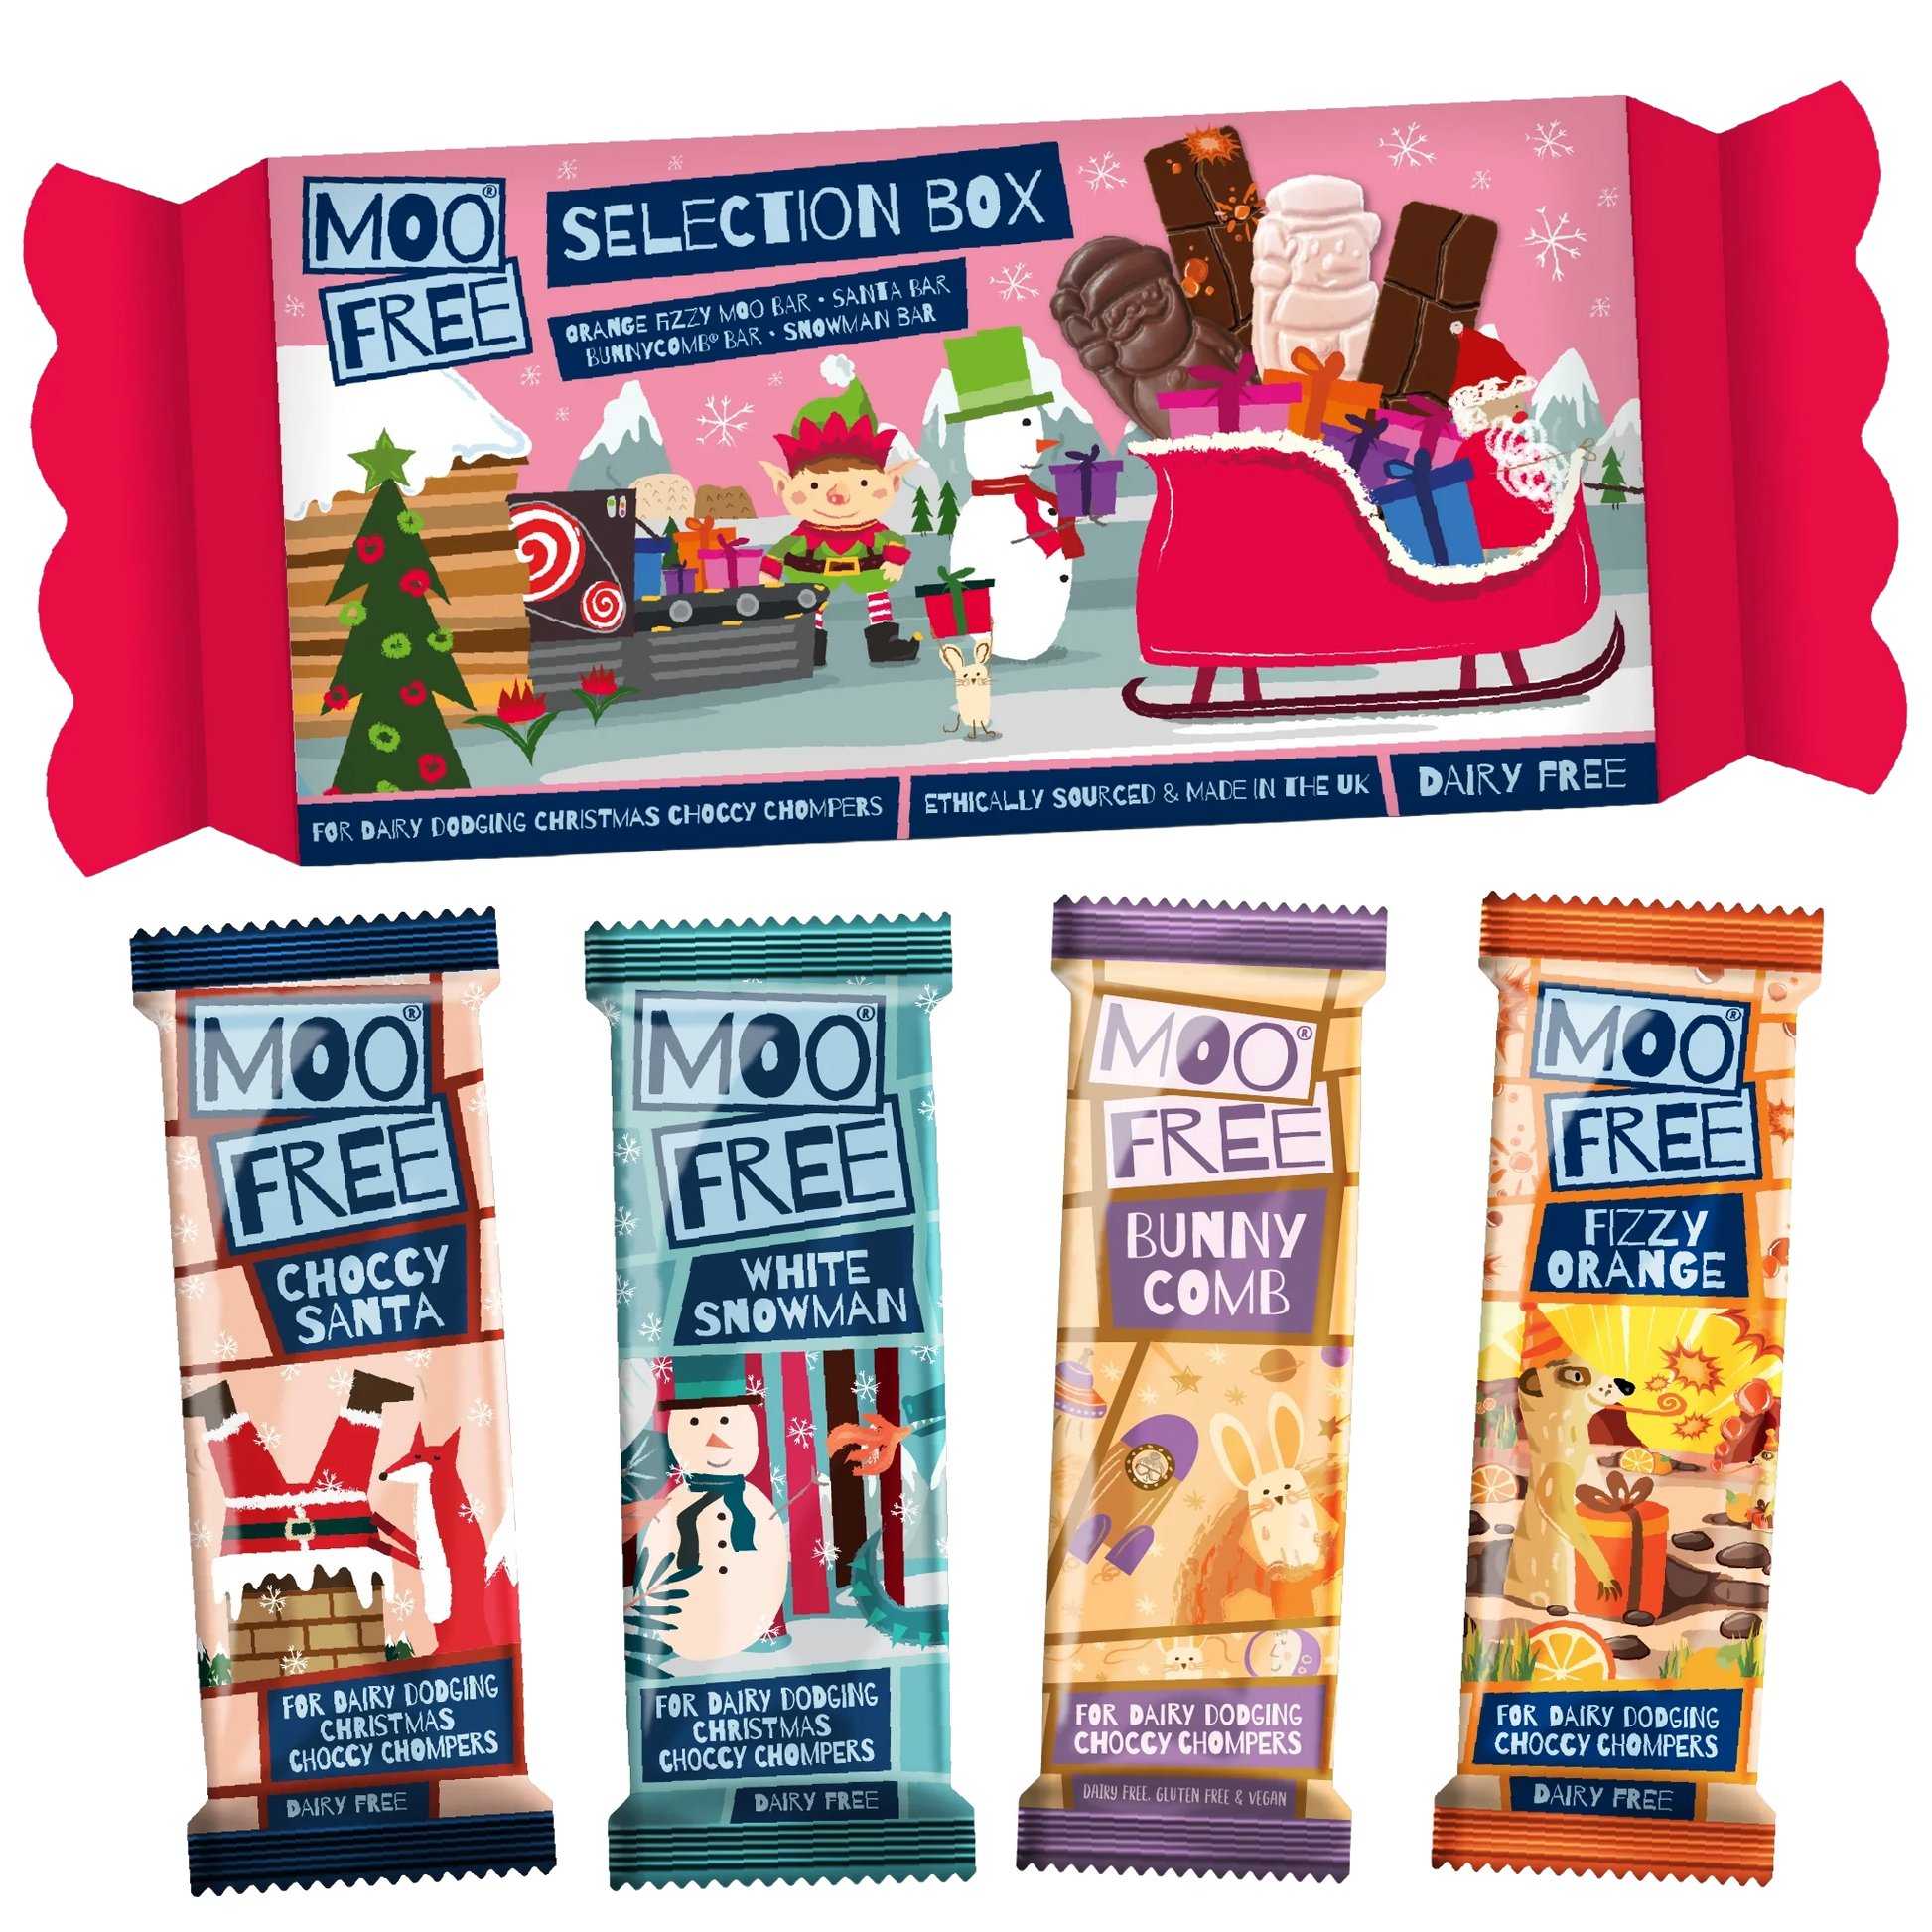 Moo free chocolate Christmas selection box